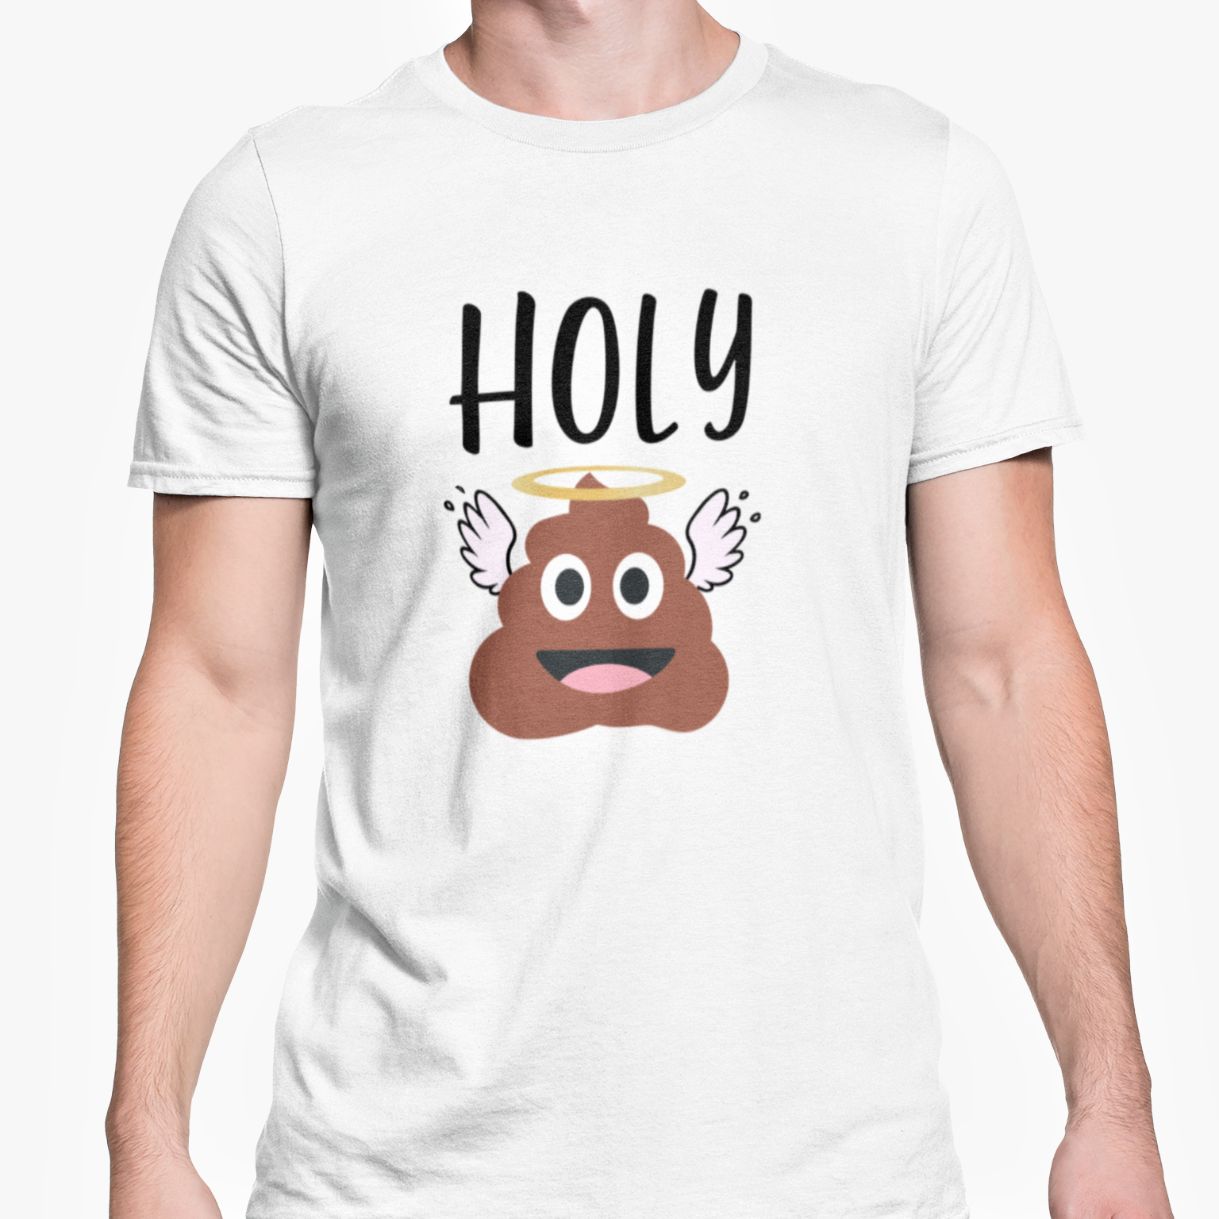 Holy Sht T-Shirt